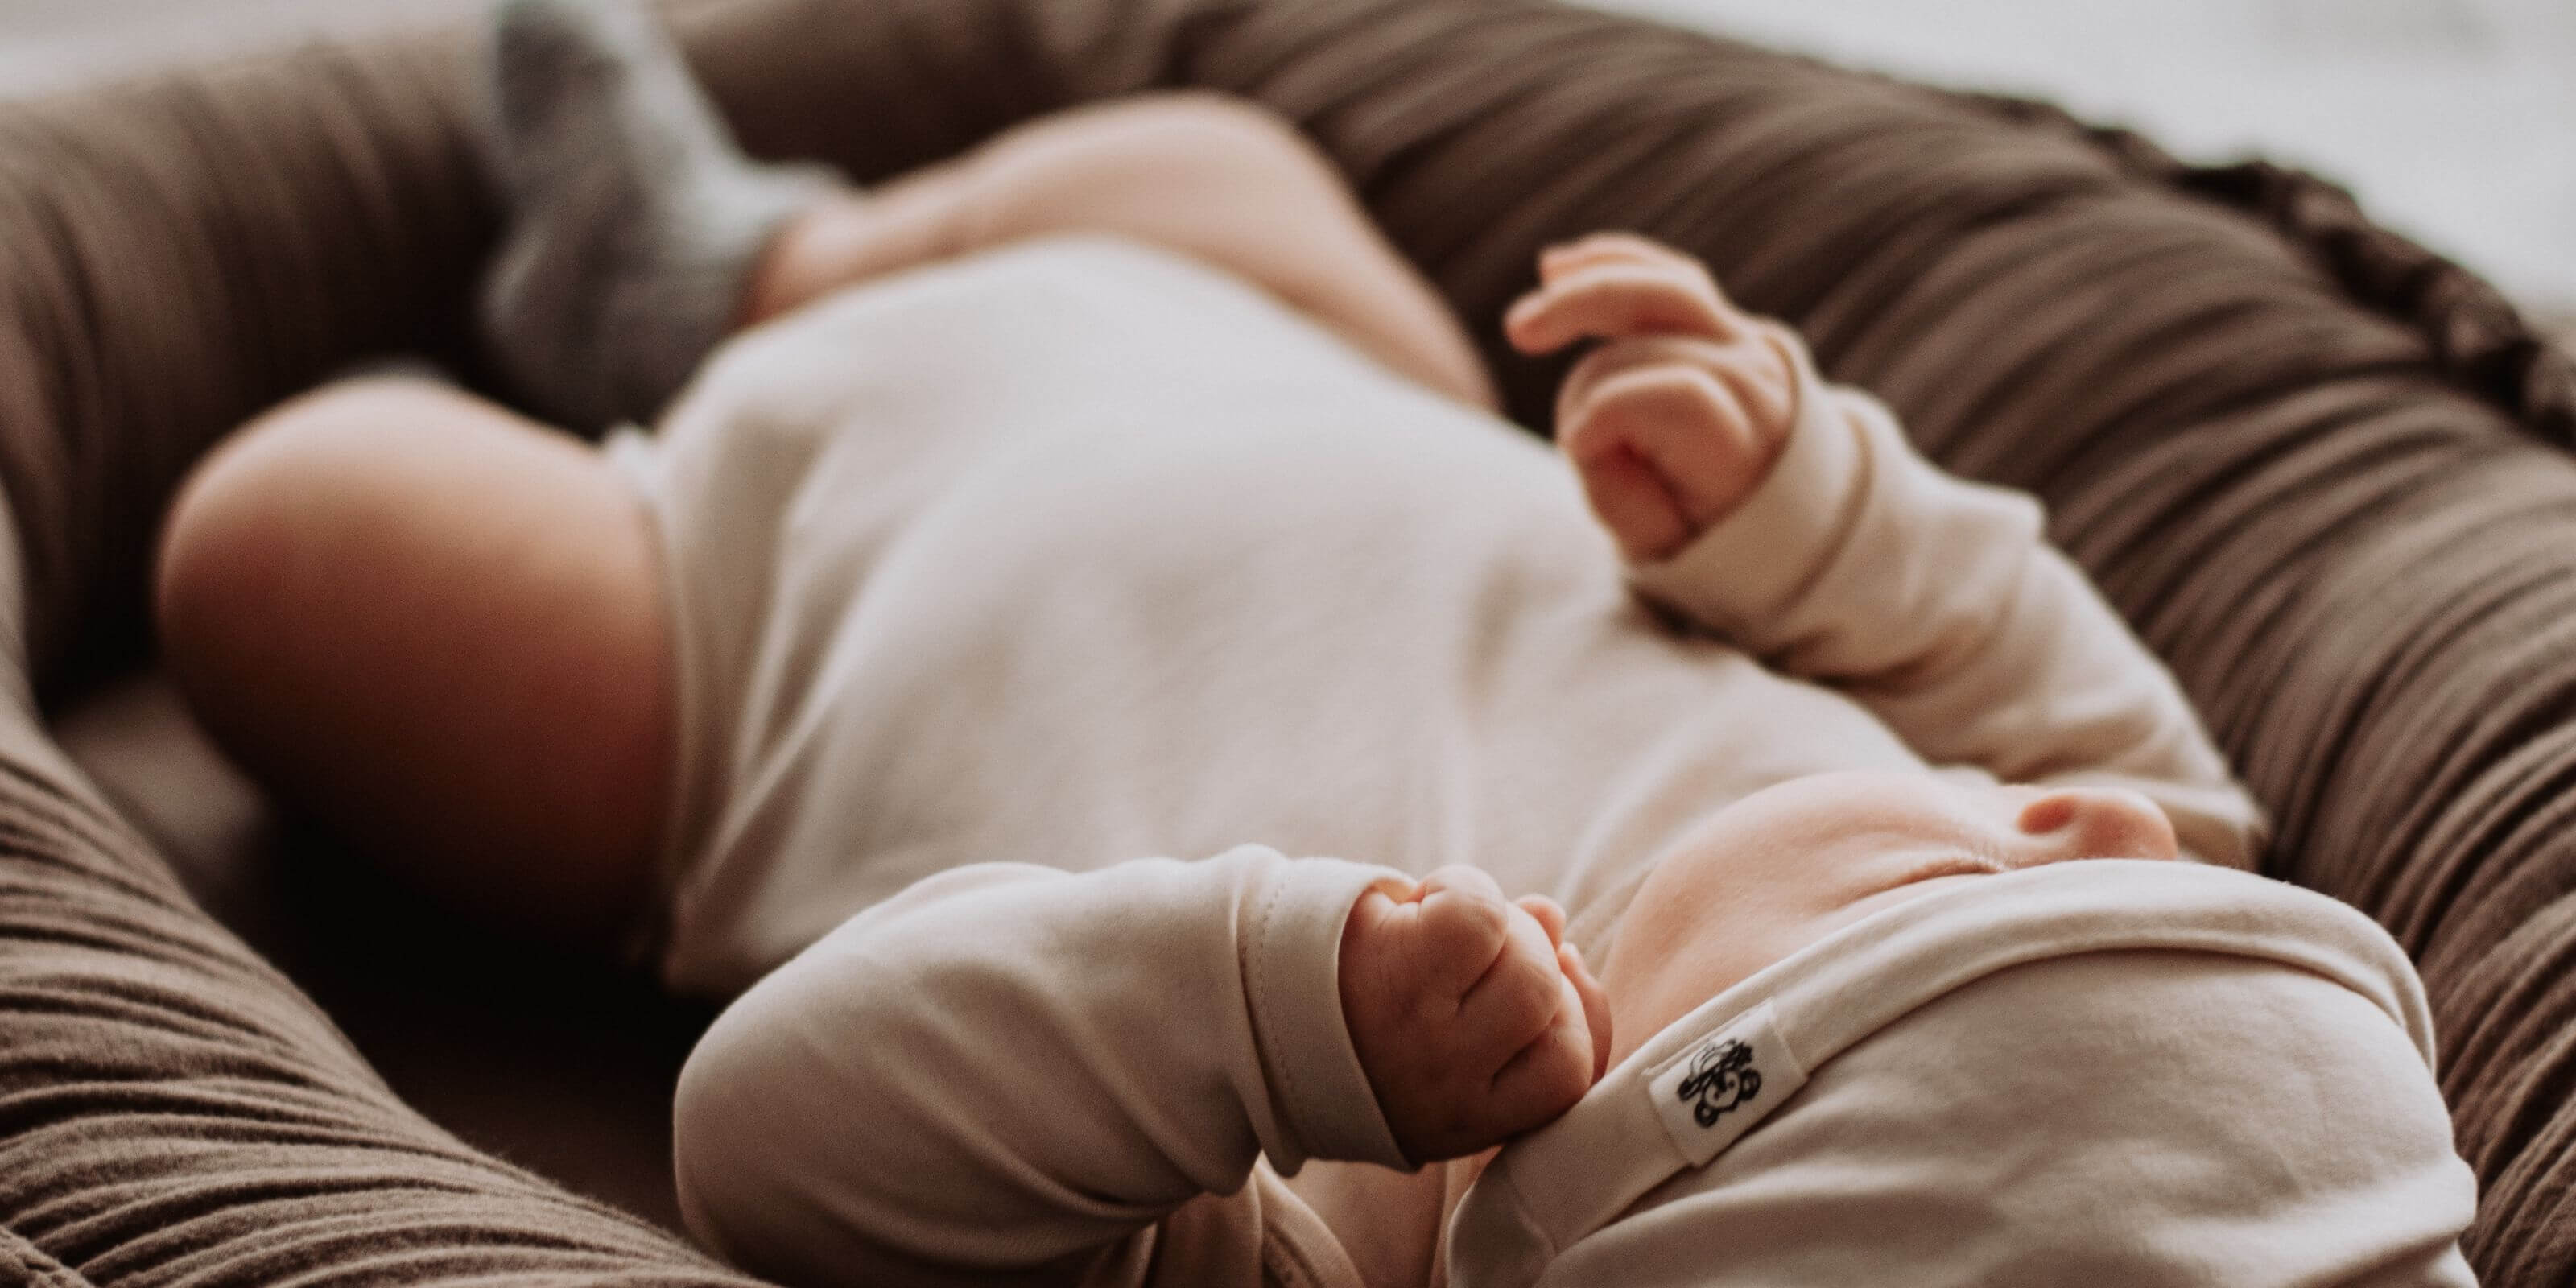 Welches Material ist für Babykleidung und Neugeborene geeignet?